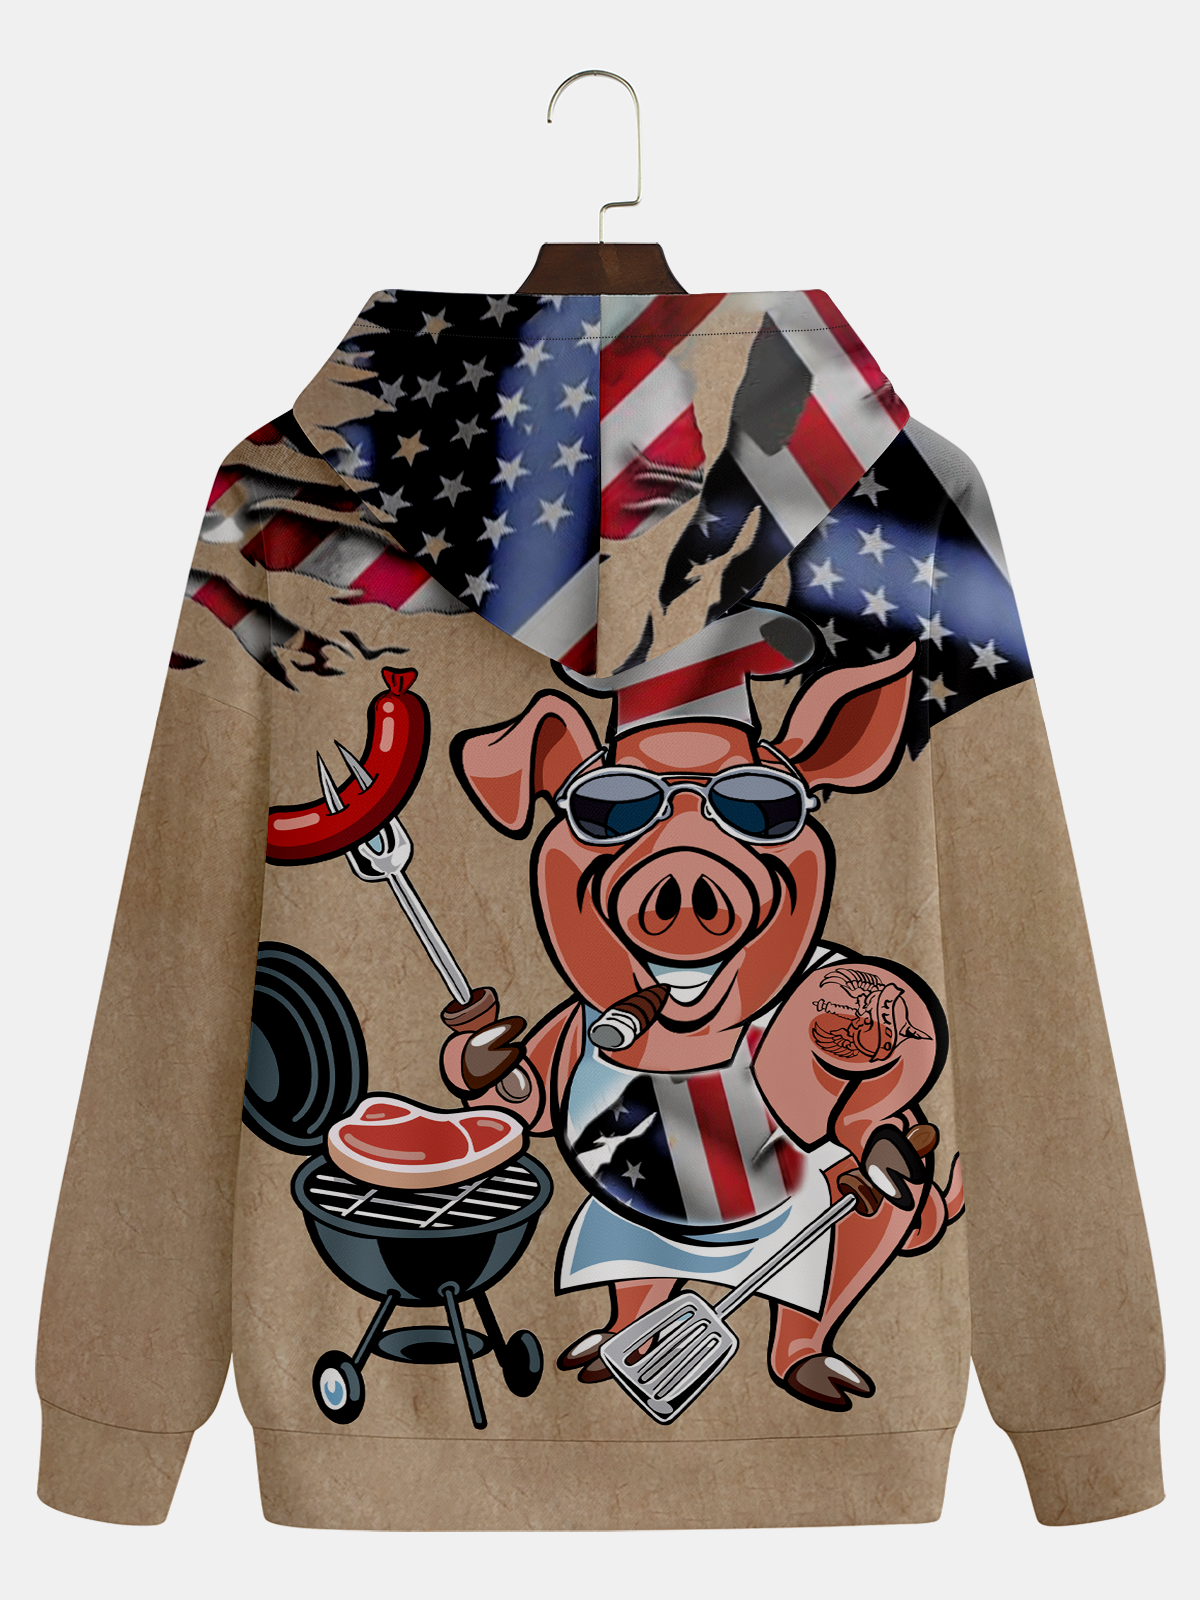 Barbecue Pig Hoodie Sweatshirt